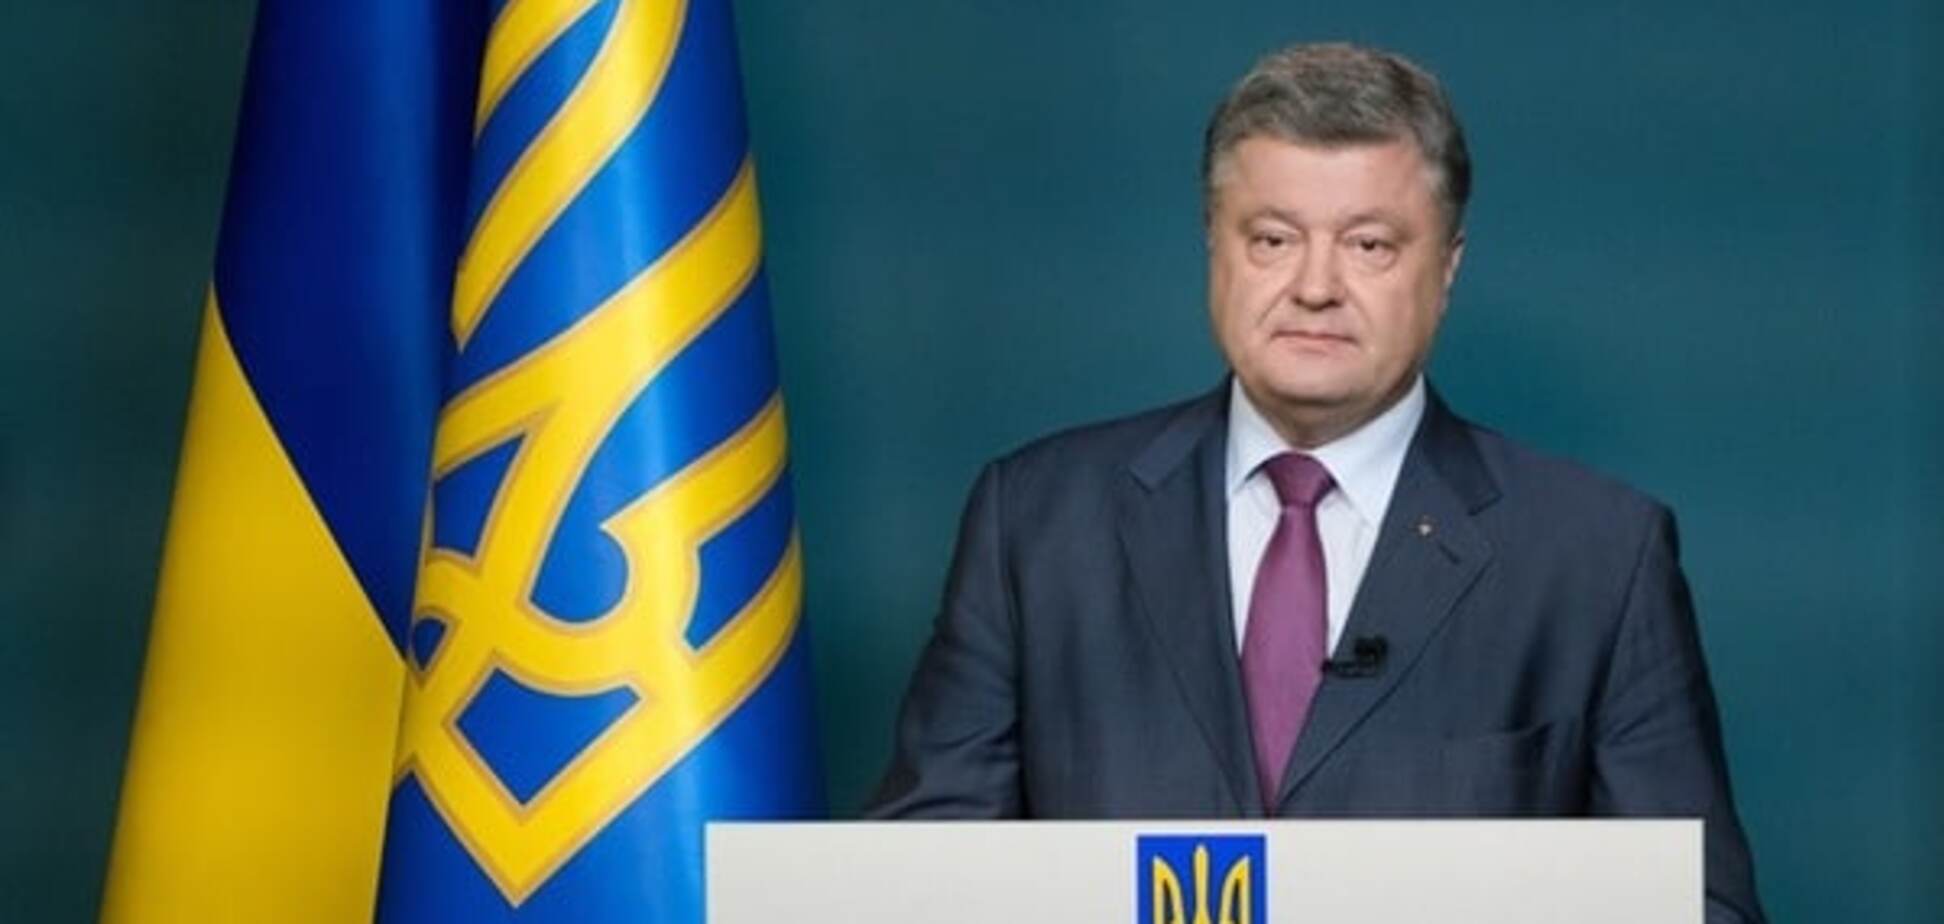 Cвіт визнає - в Україні відбуваються реформи